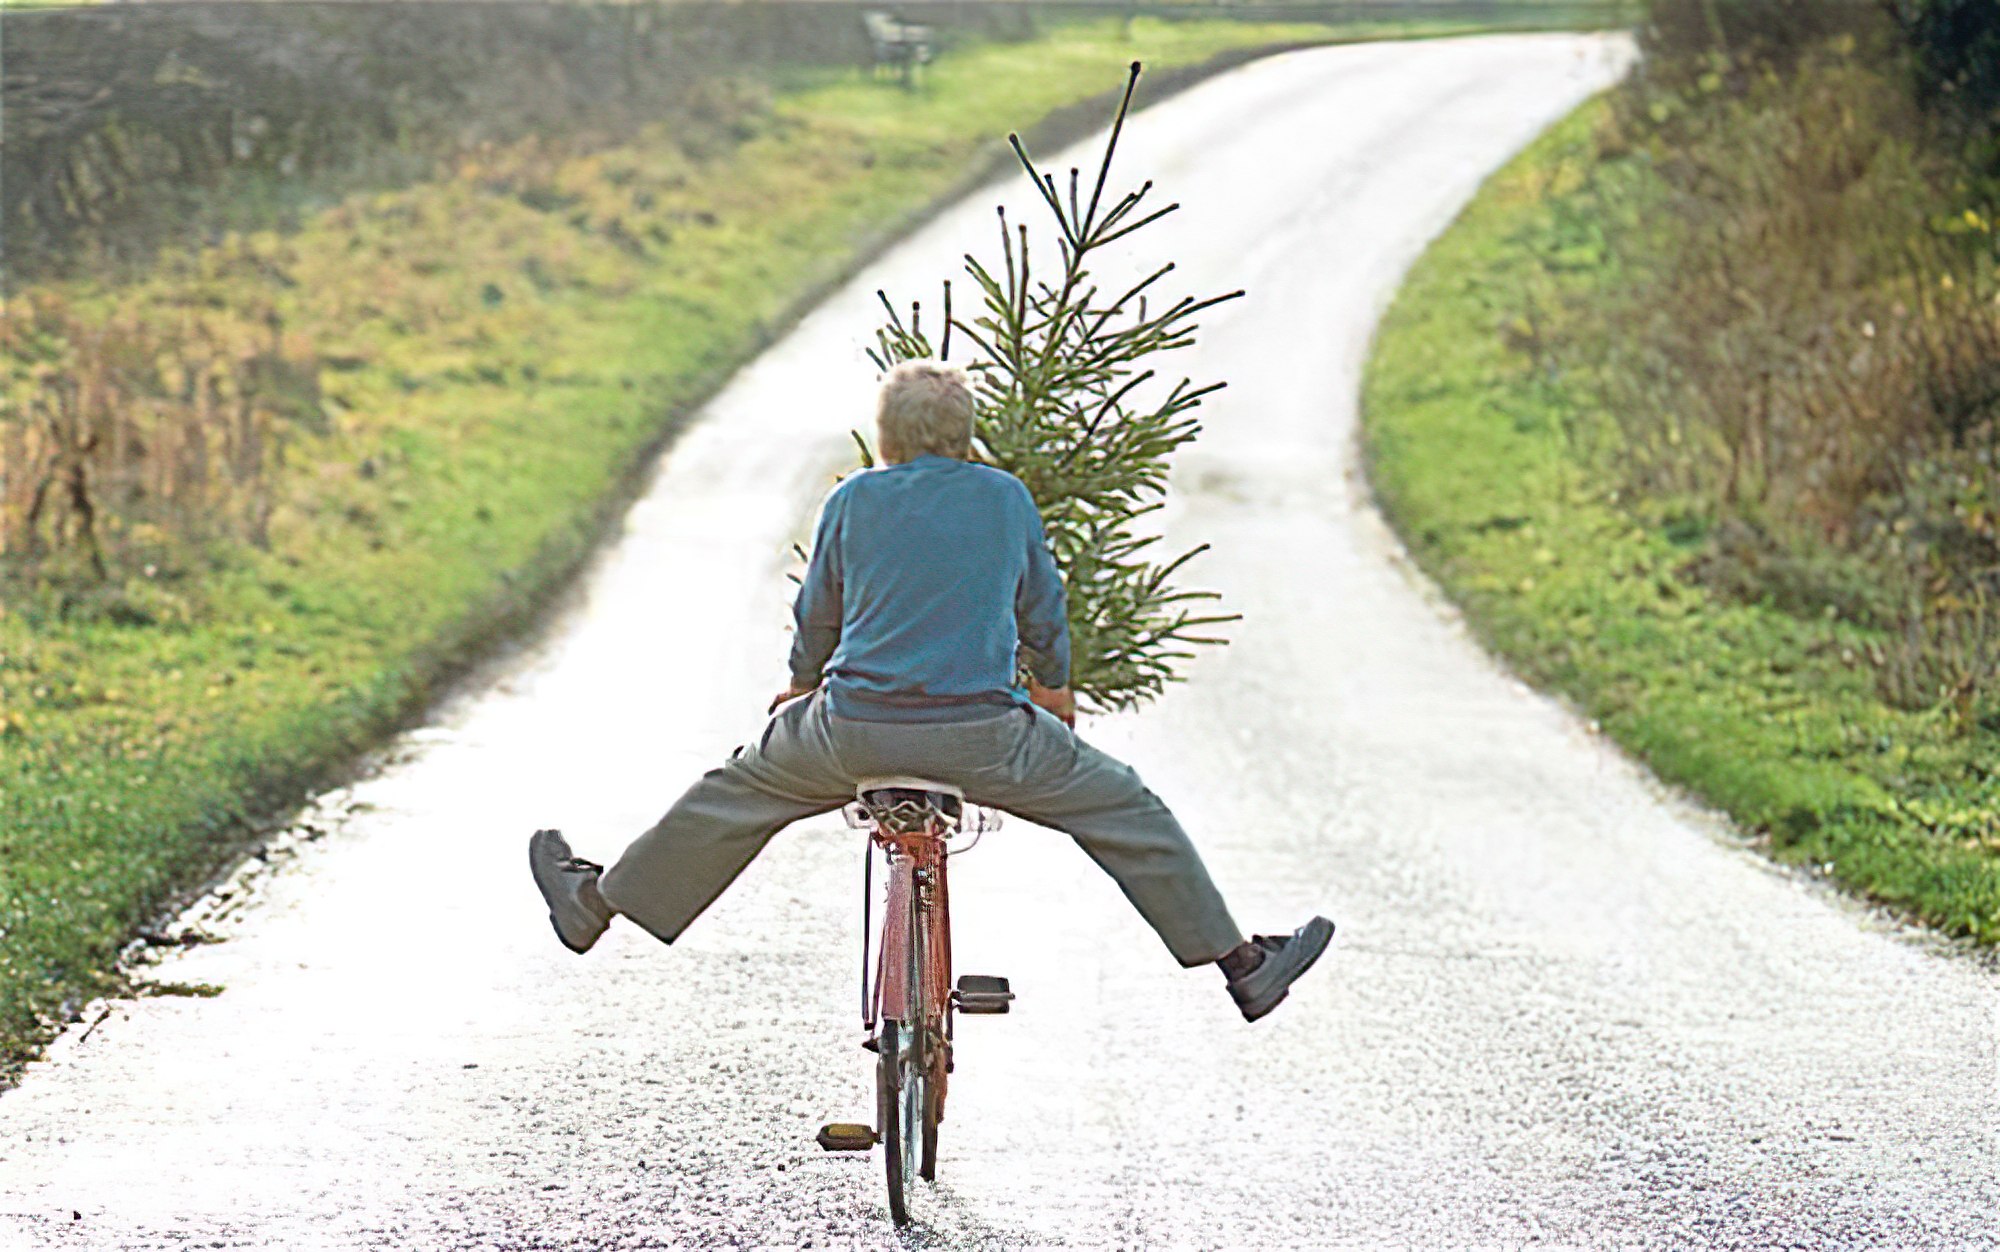 Imagen divertida con el hombre en una bicicleta cargando un árbol de Navidad con las piernas extendidas. ¡Pista parece estar gritando! ¡Se acerca la Navidad!